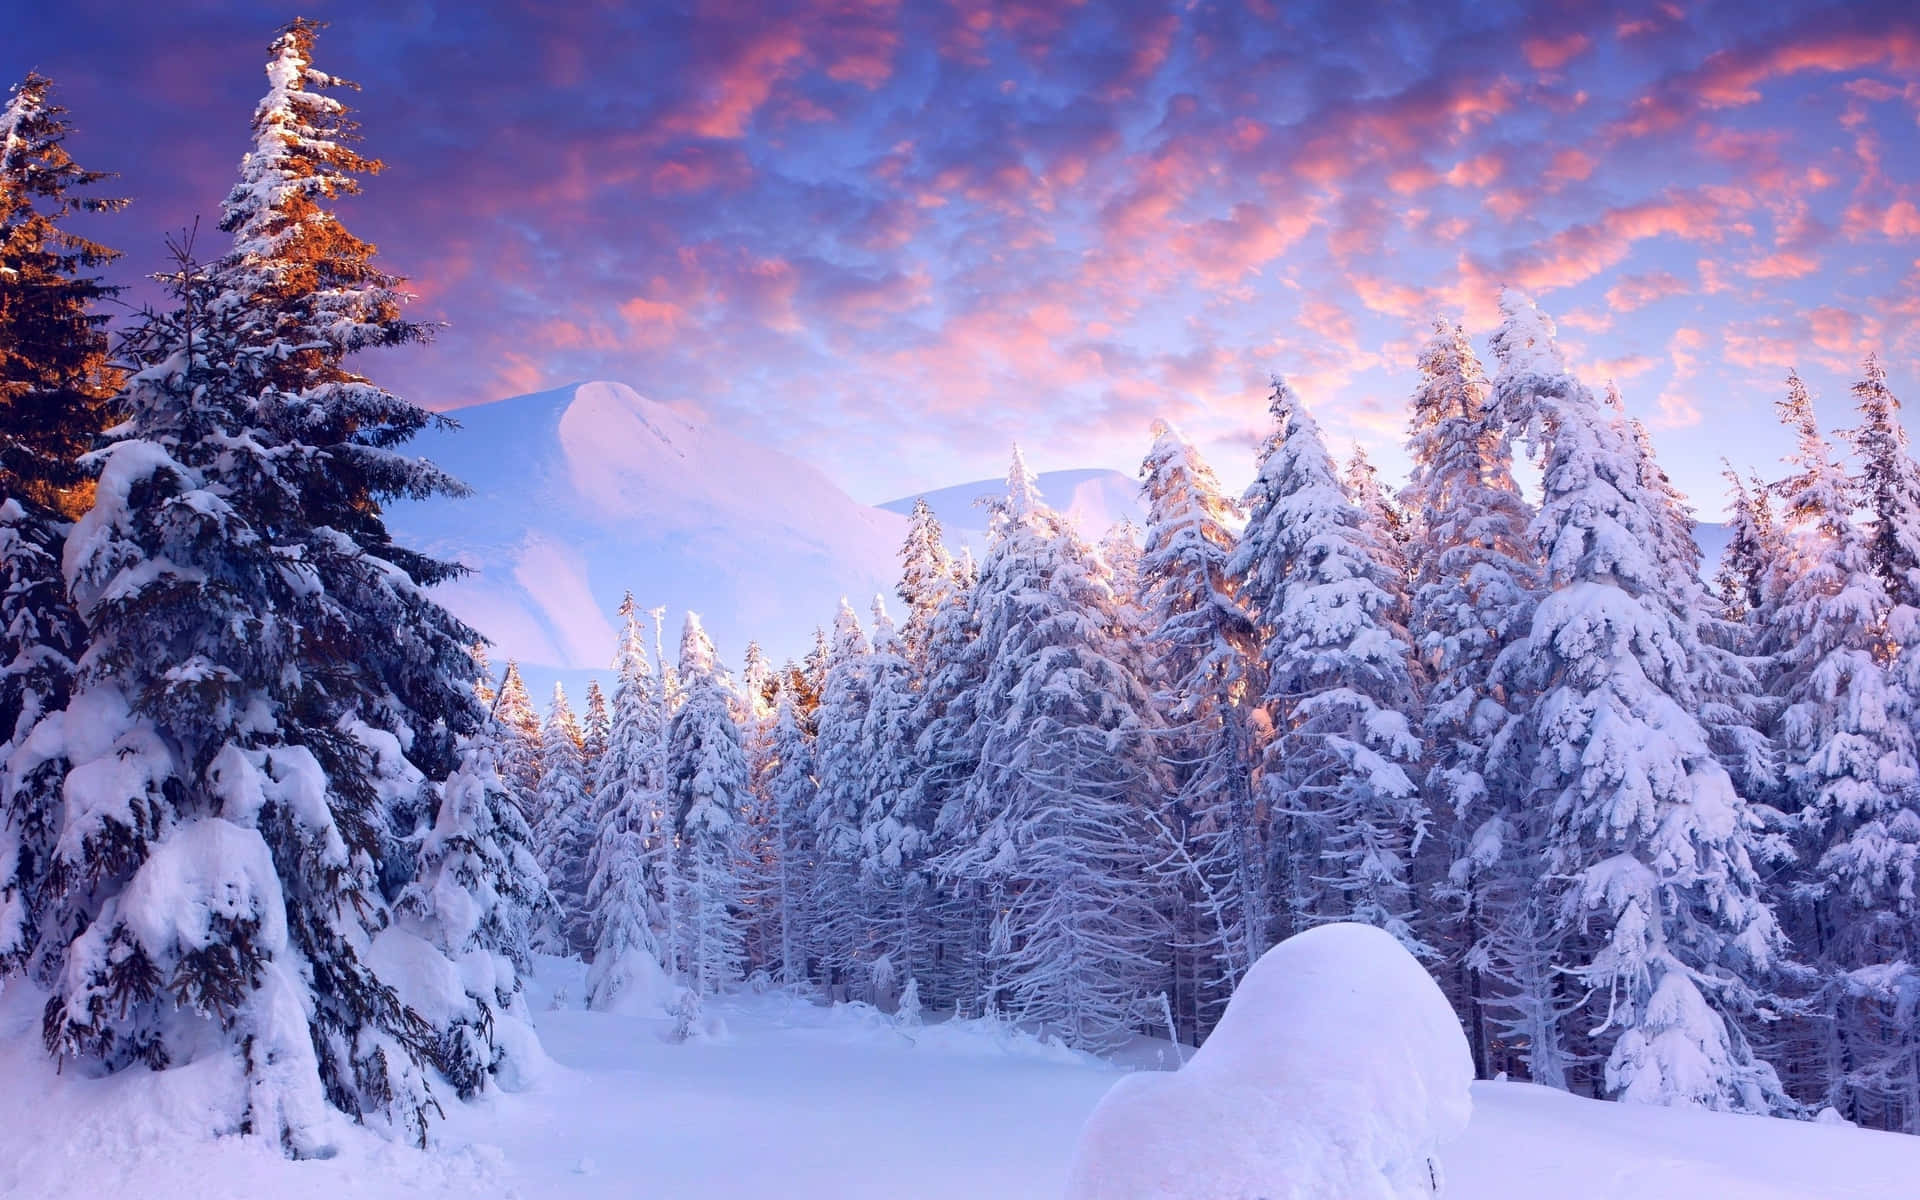 Disfrutandode La Tranquila Serenidad De Un Maravilloso Paisaje Invernal Nevado.